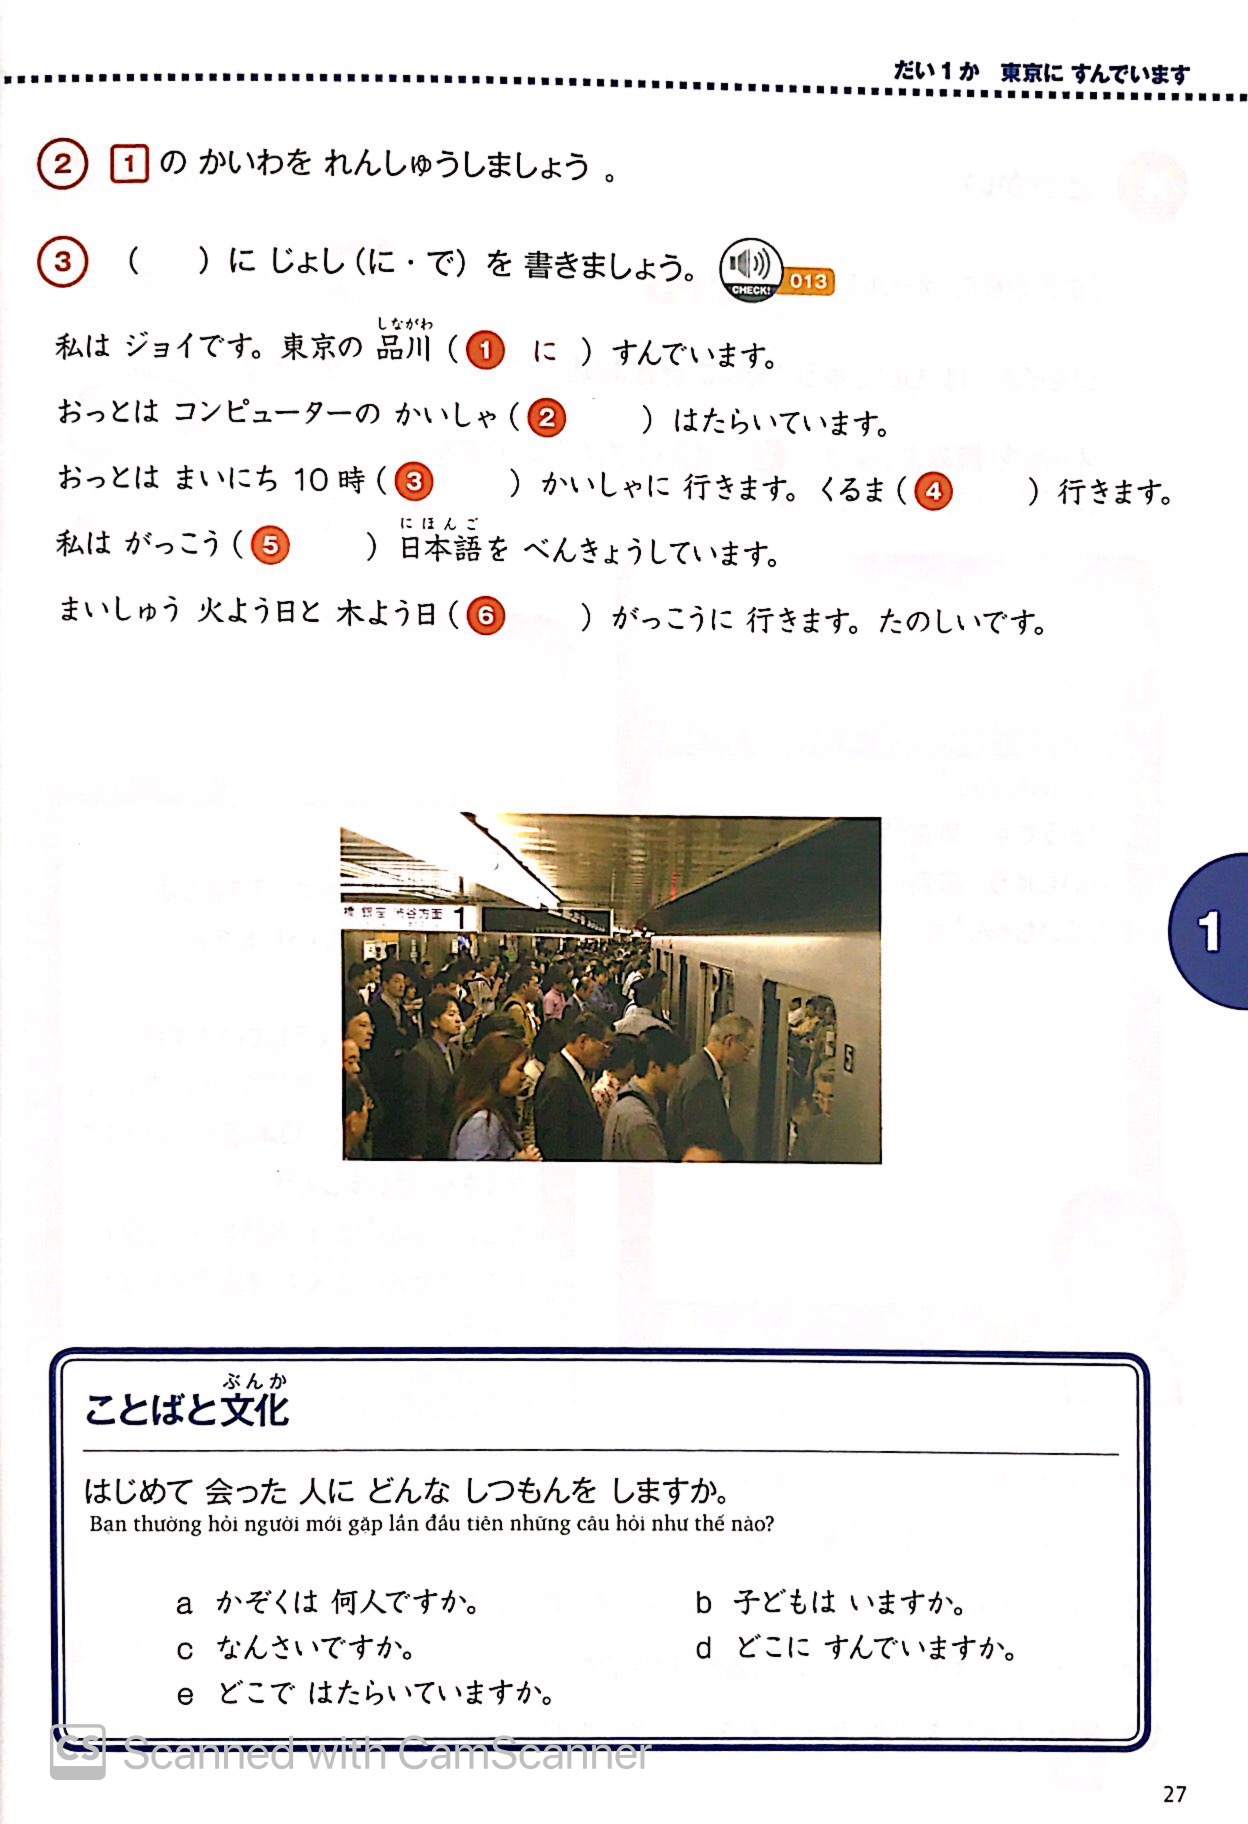 Marugoto - Sơ Cấp 1 - A2 - Hiểu Biết Ngôn Ngữ PDF